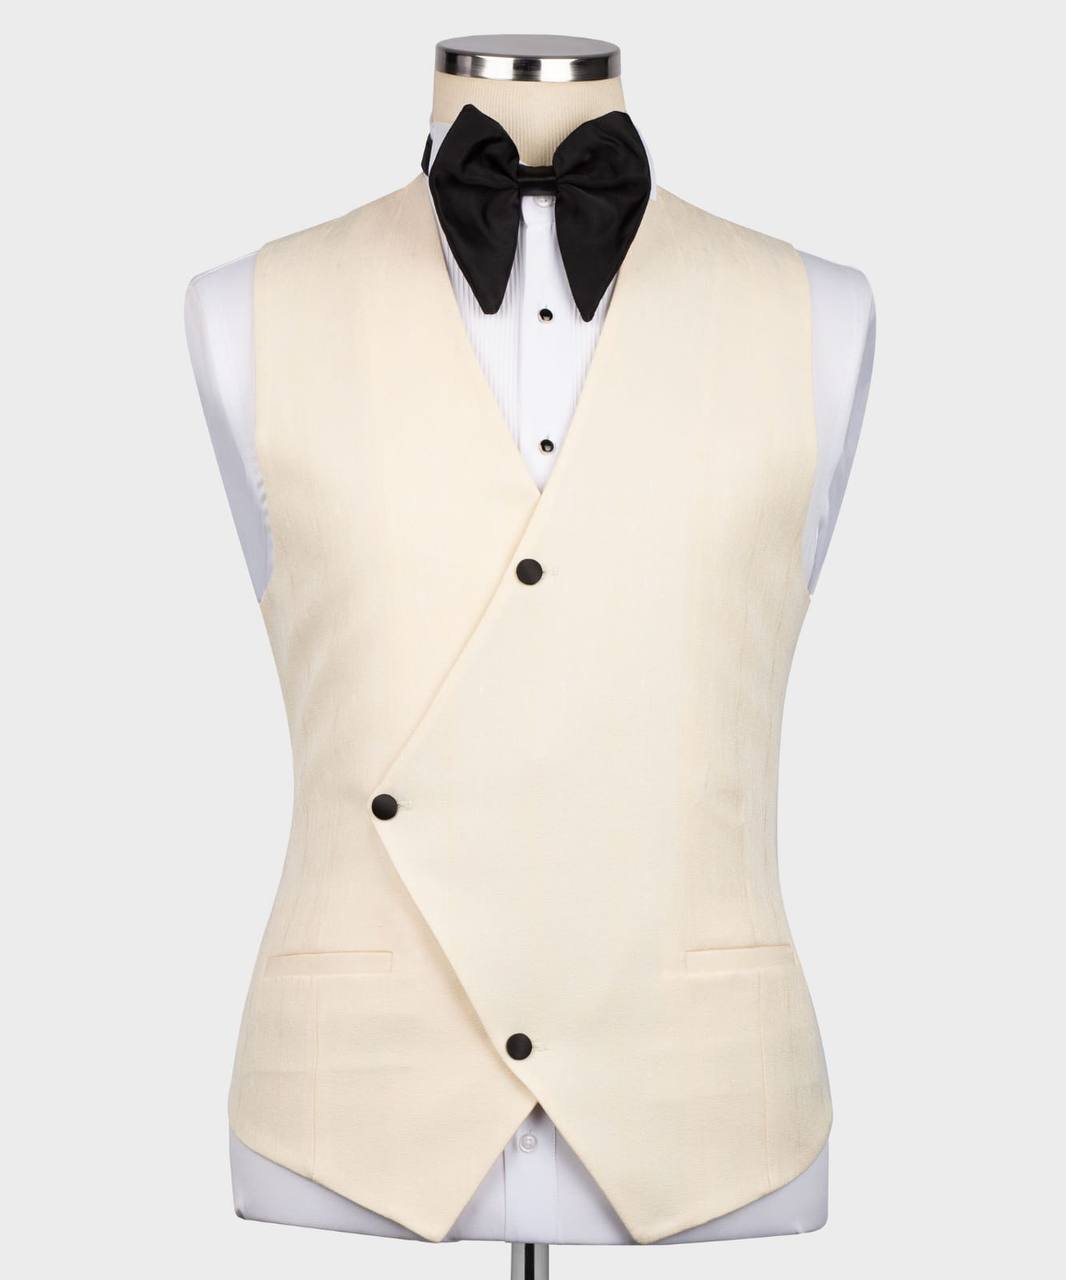 Men's Cream/Beige Tuxedo with Black Collar